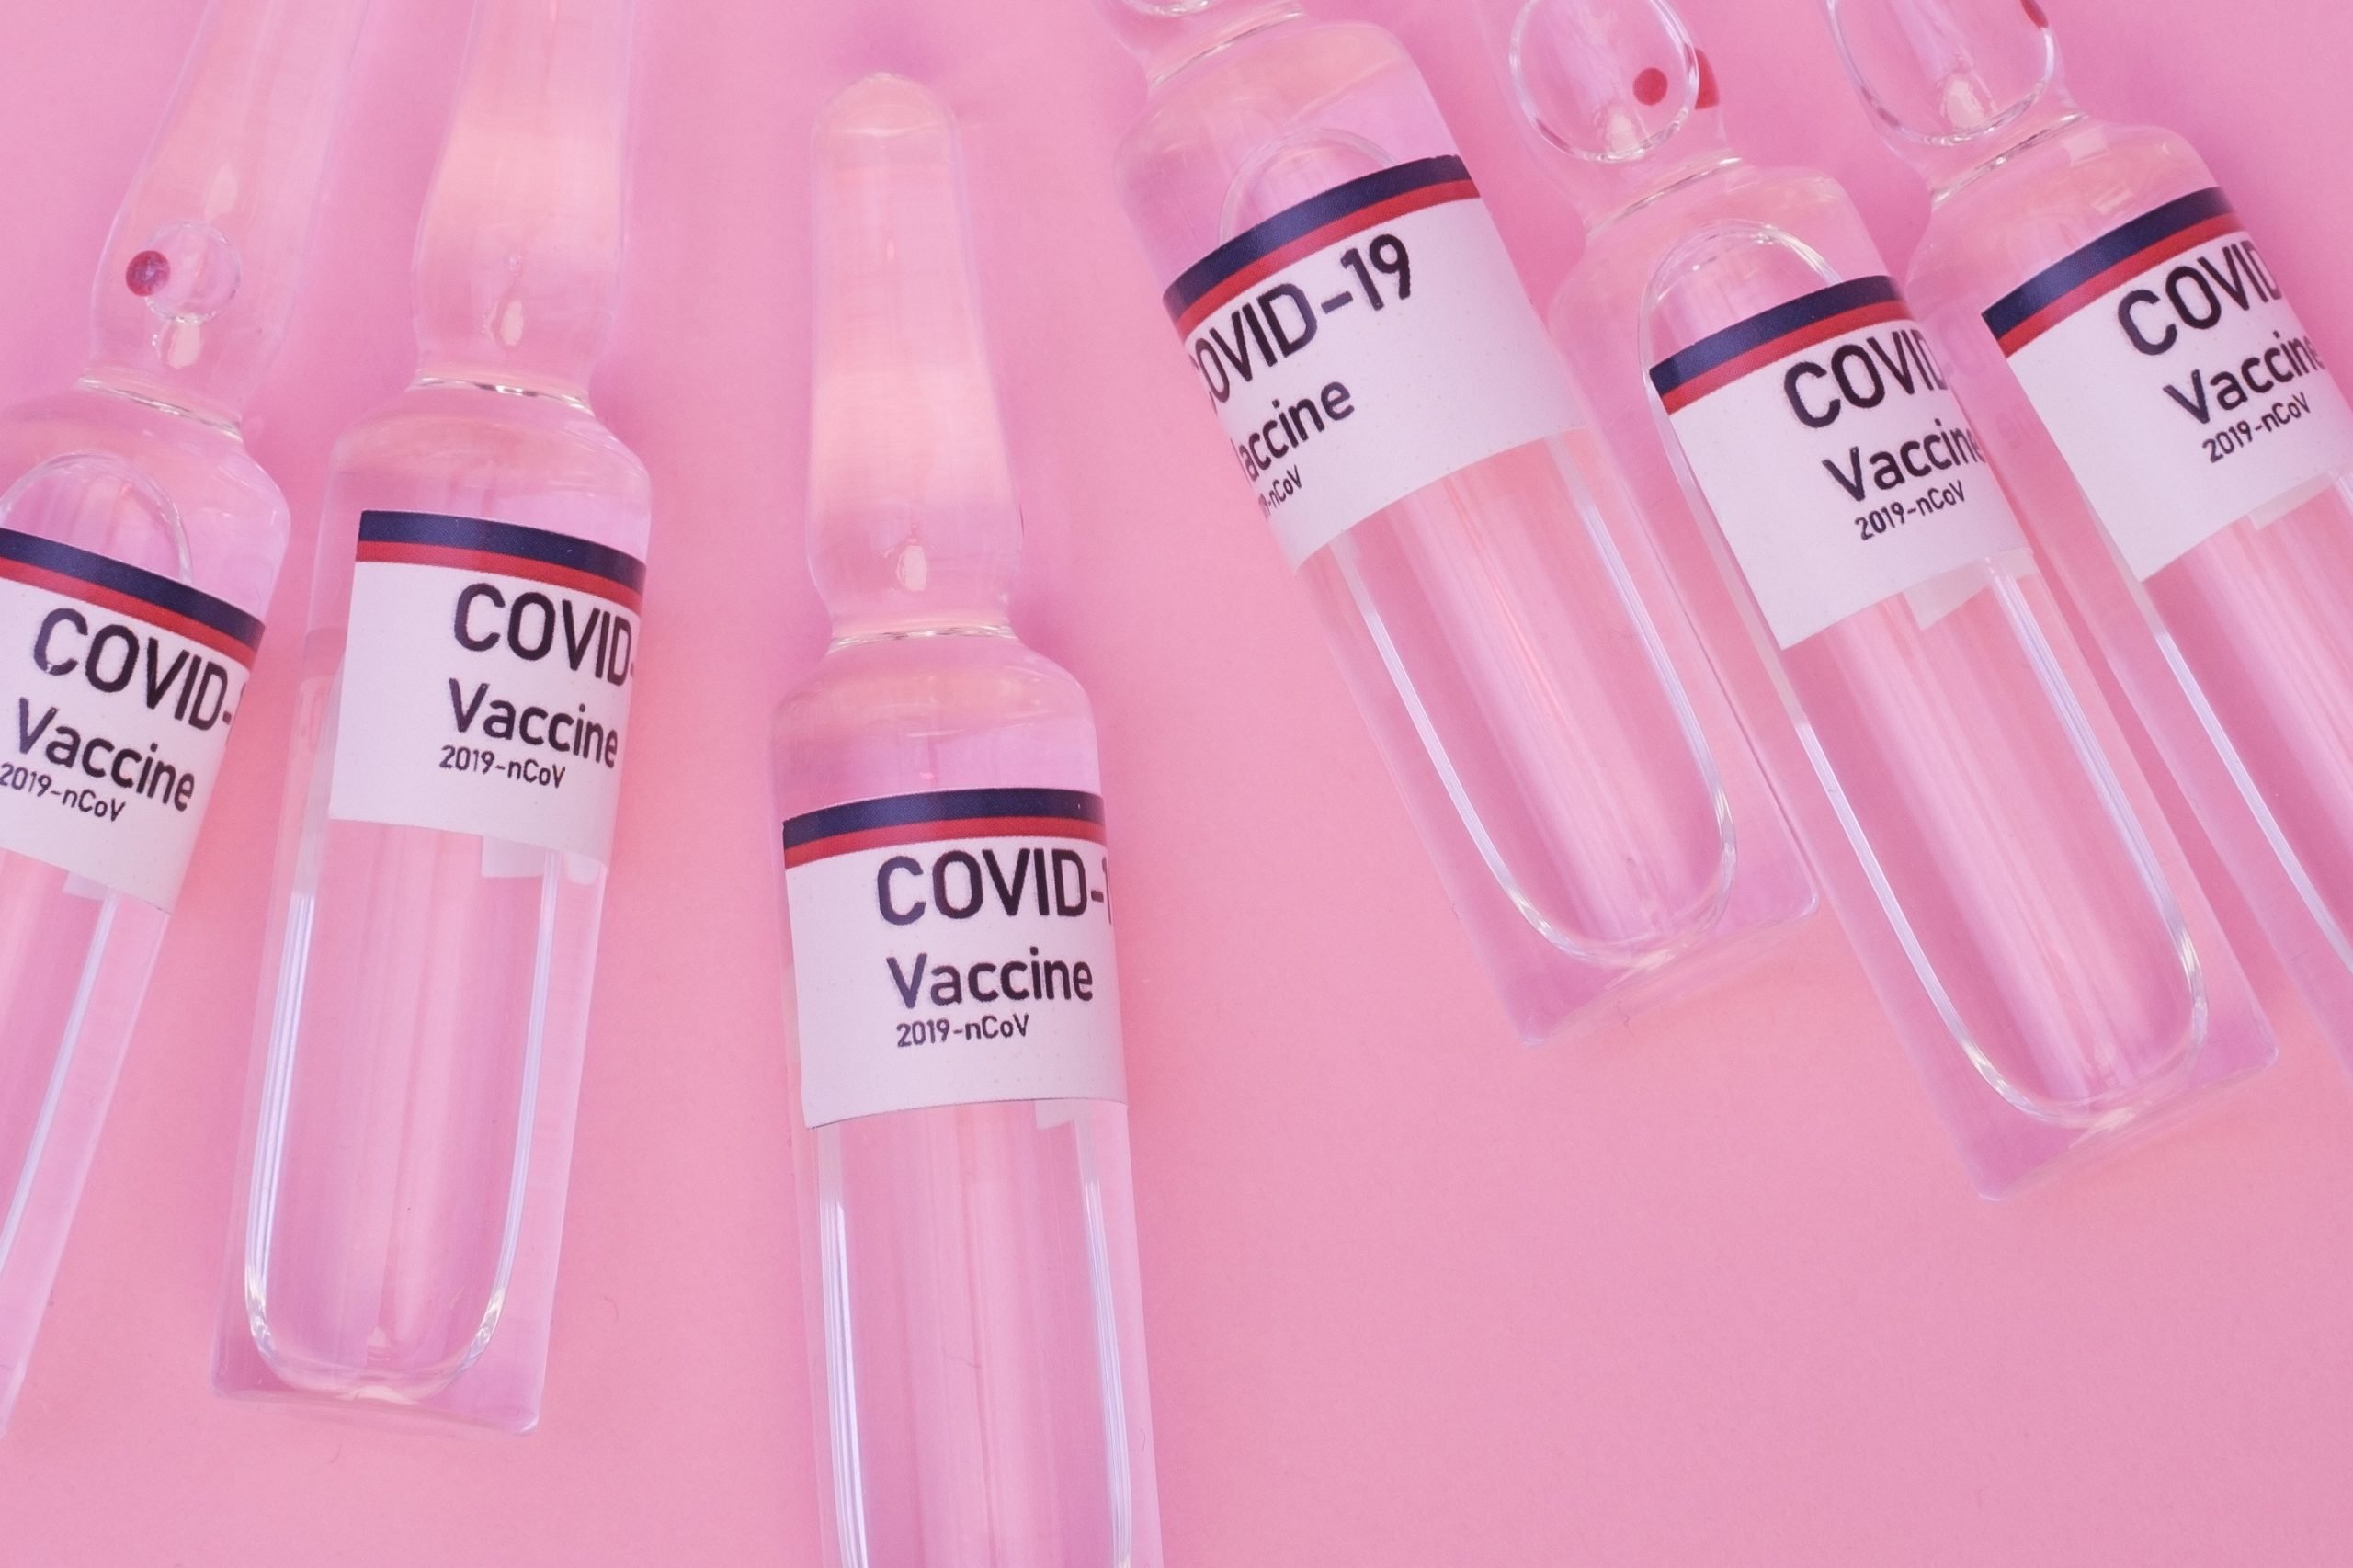 Vom avea nevoie de o a treia doză de vaccin anti-Covid-19, deoarece imunitatea scade